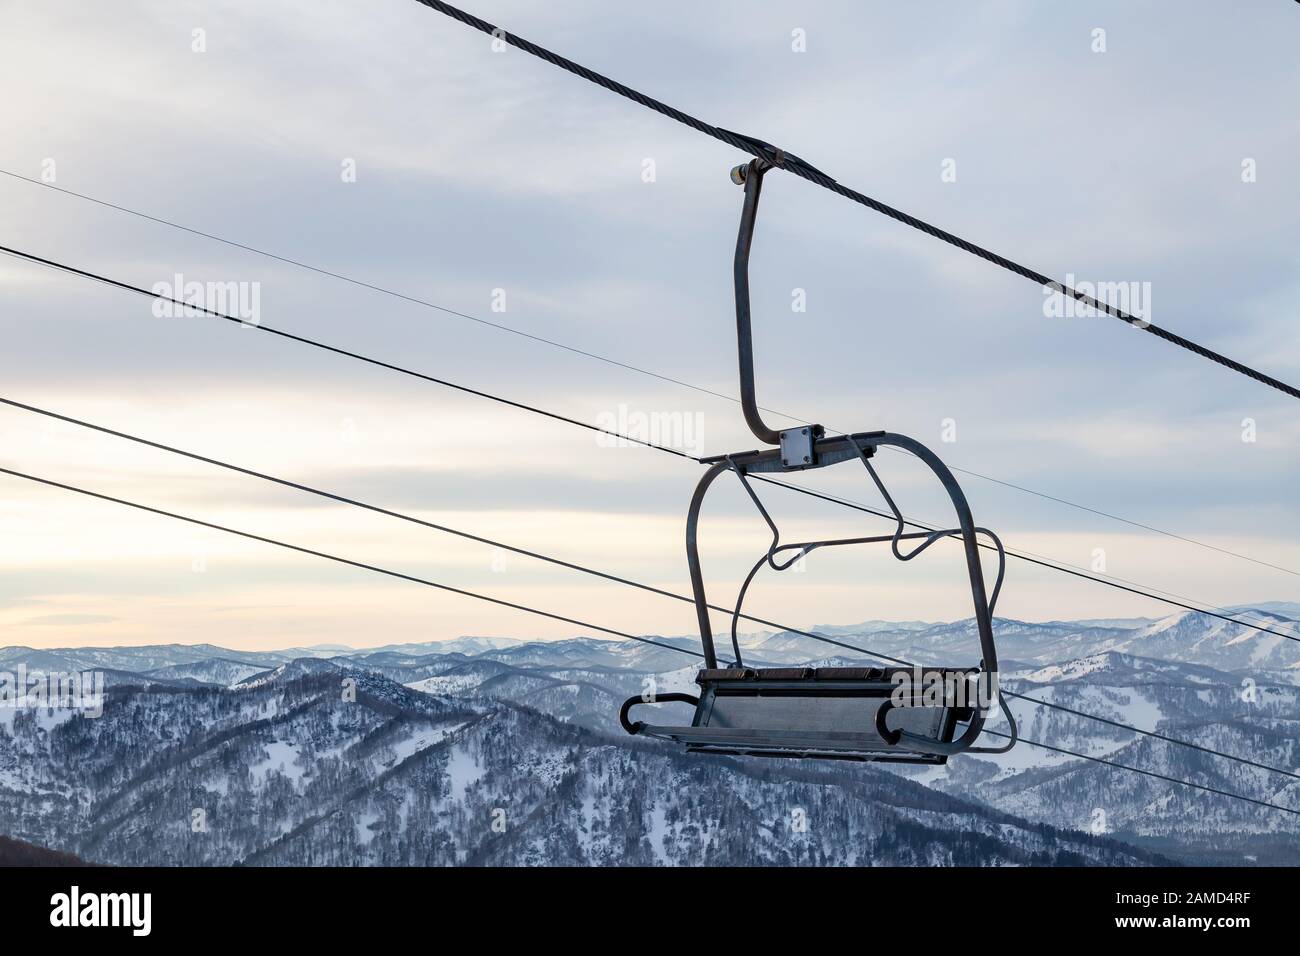 Eine Skilift-Sessellbahn mit einer Kabine, die an einem Kabel aufgehängt ist, in der Menschen mit Skiern und Snowboards auf einem Hintergrund von Bergen sitzen, Bäume mit Sno Stockfoto